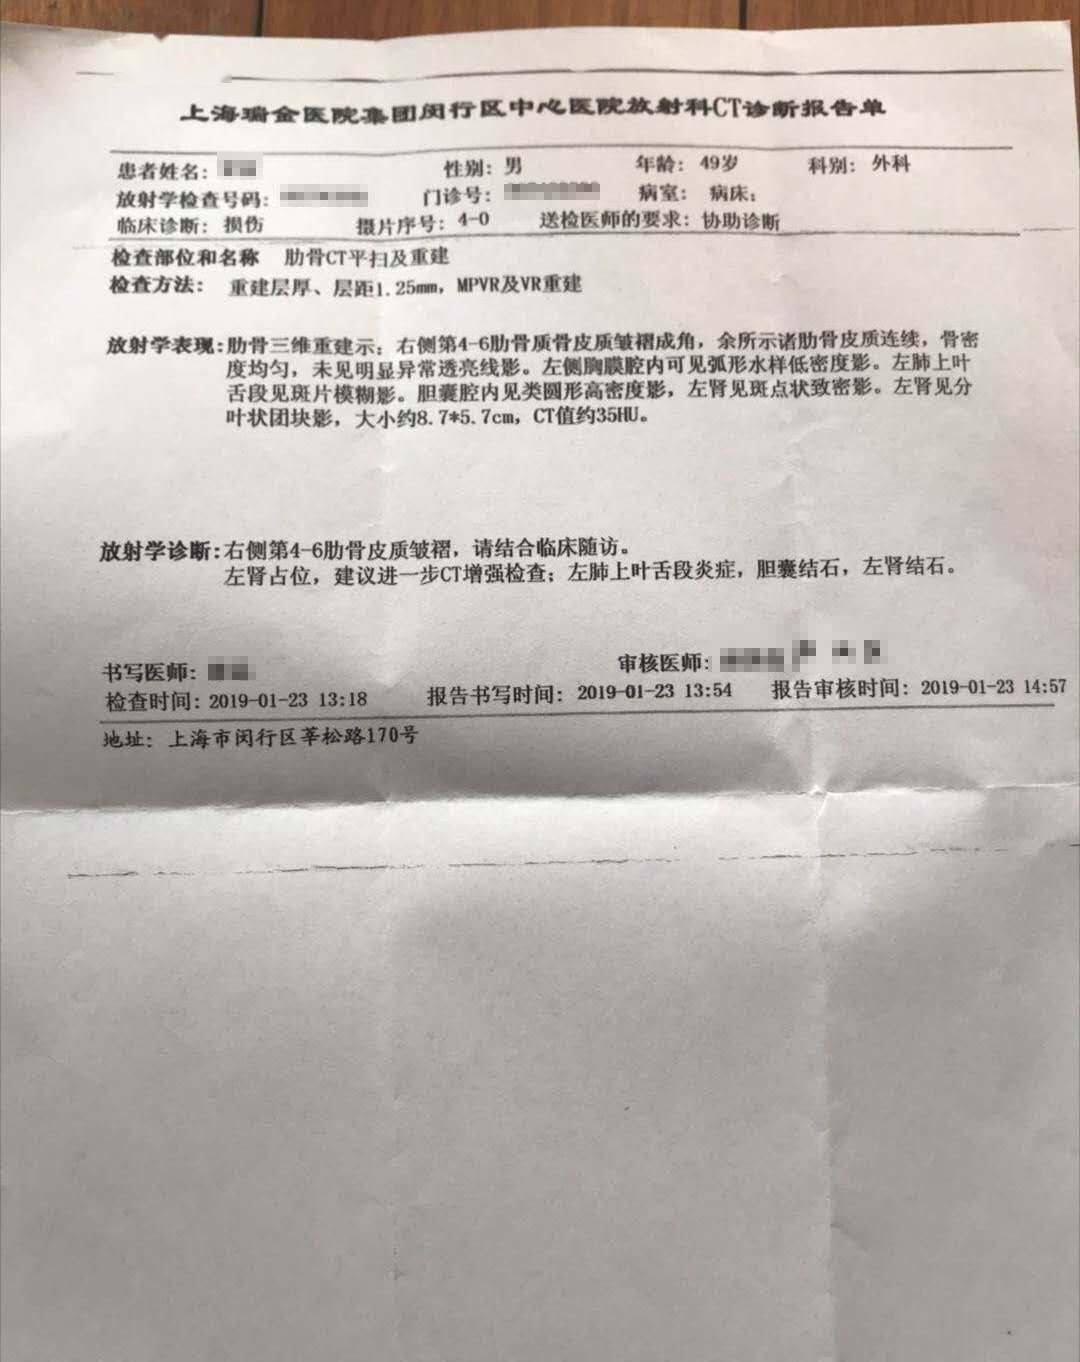 上海律师助姐姐取证被控故意伤害,现场视频首曝光,妻子 全程没有攻击殴打对方